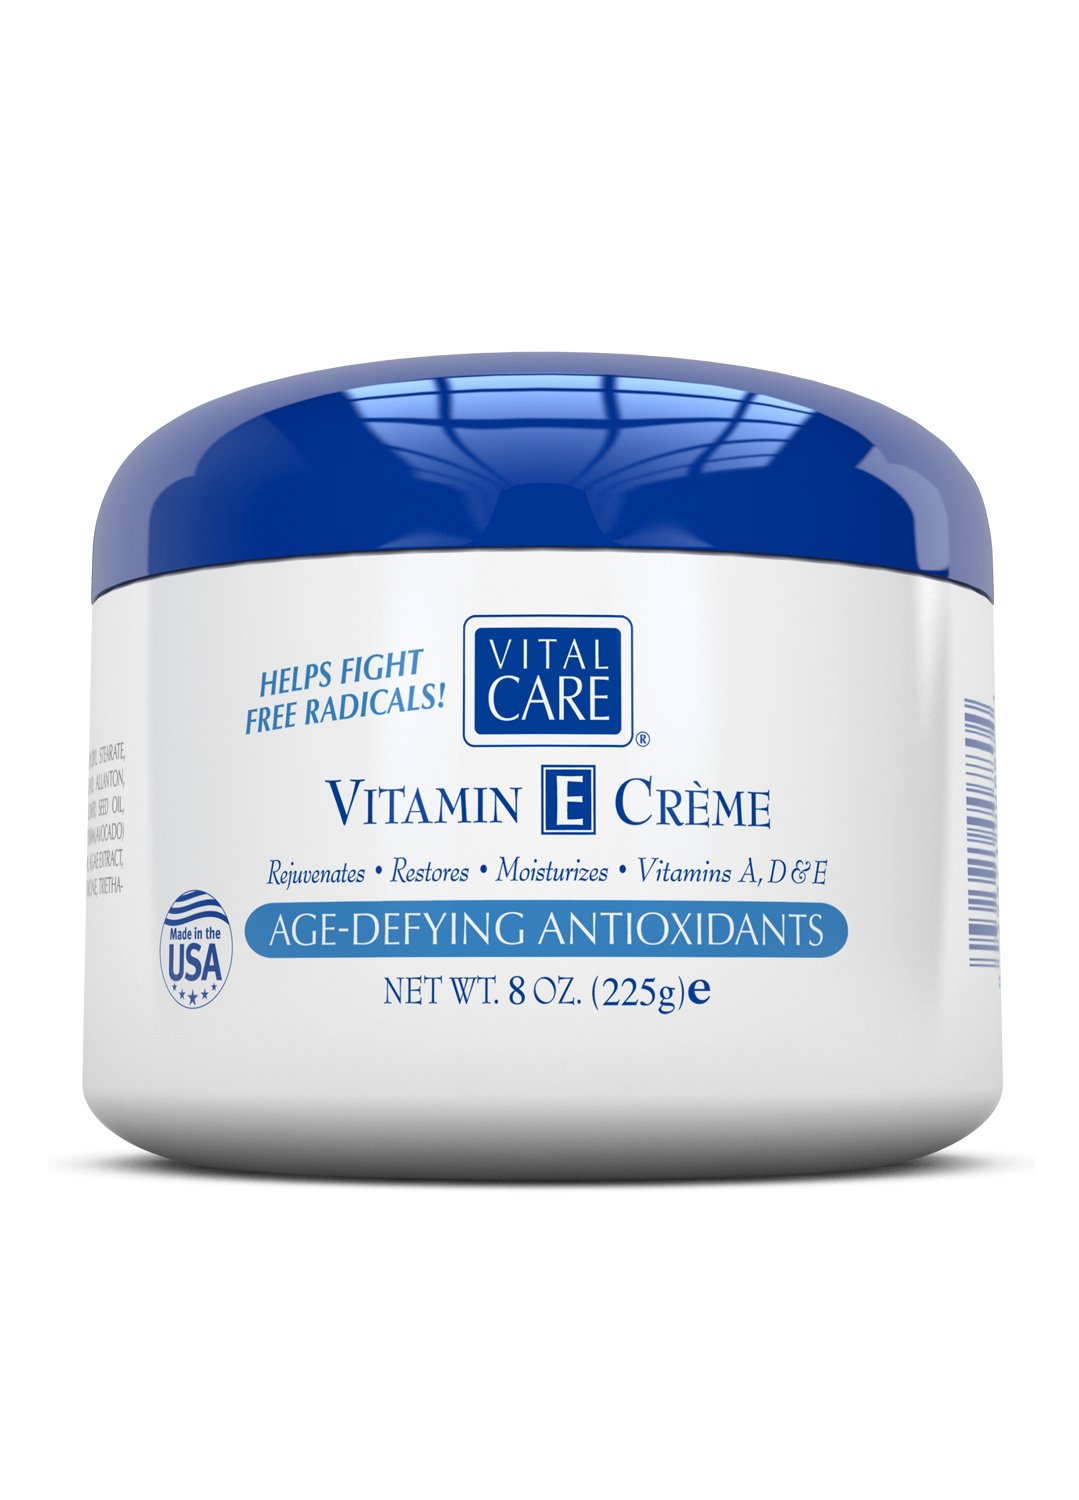 Tại sao Vitamin E Creme được coi là một lựa chọn tốt cho việc chăm sóc da?
